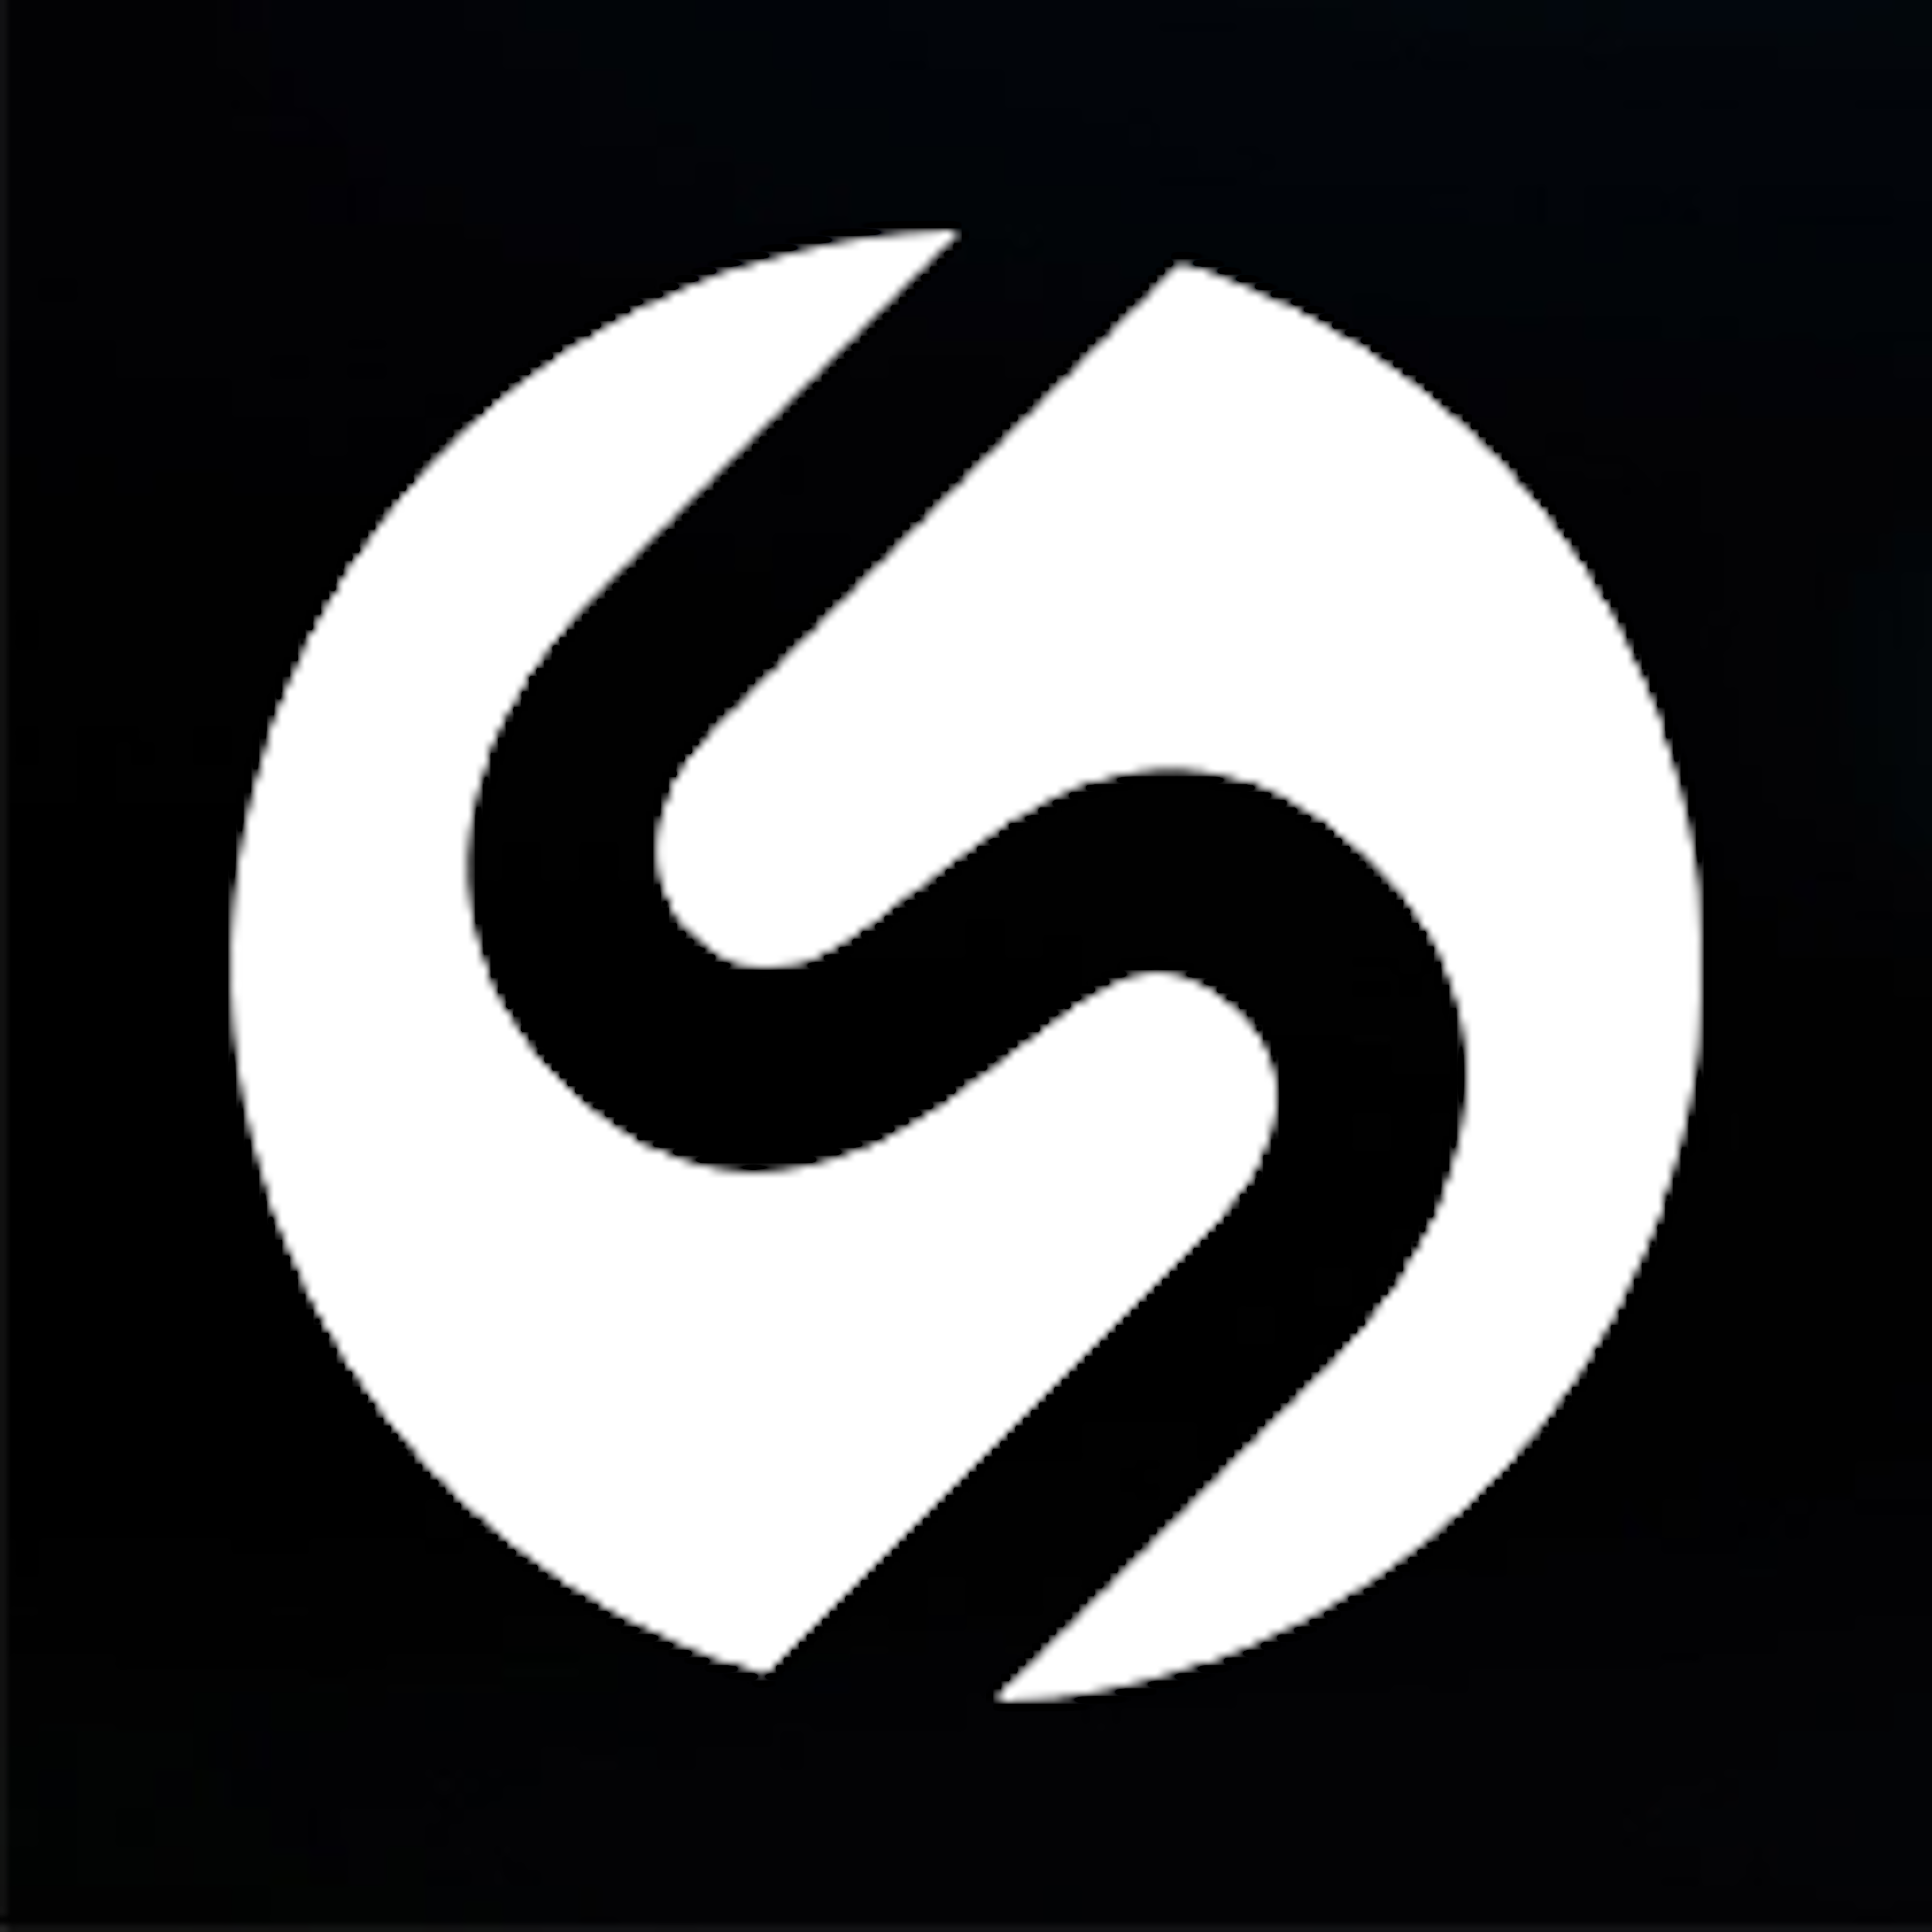 Sherpany Logo